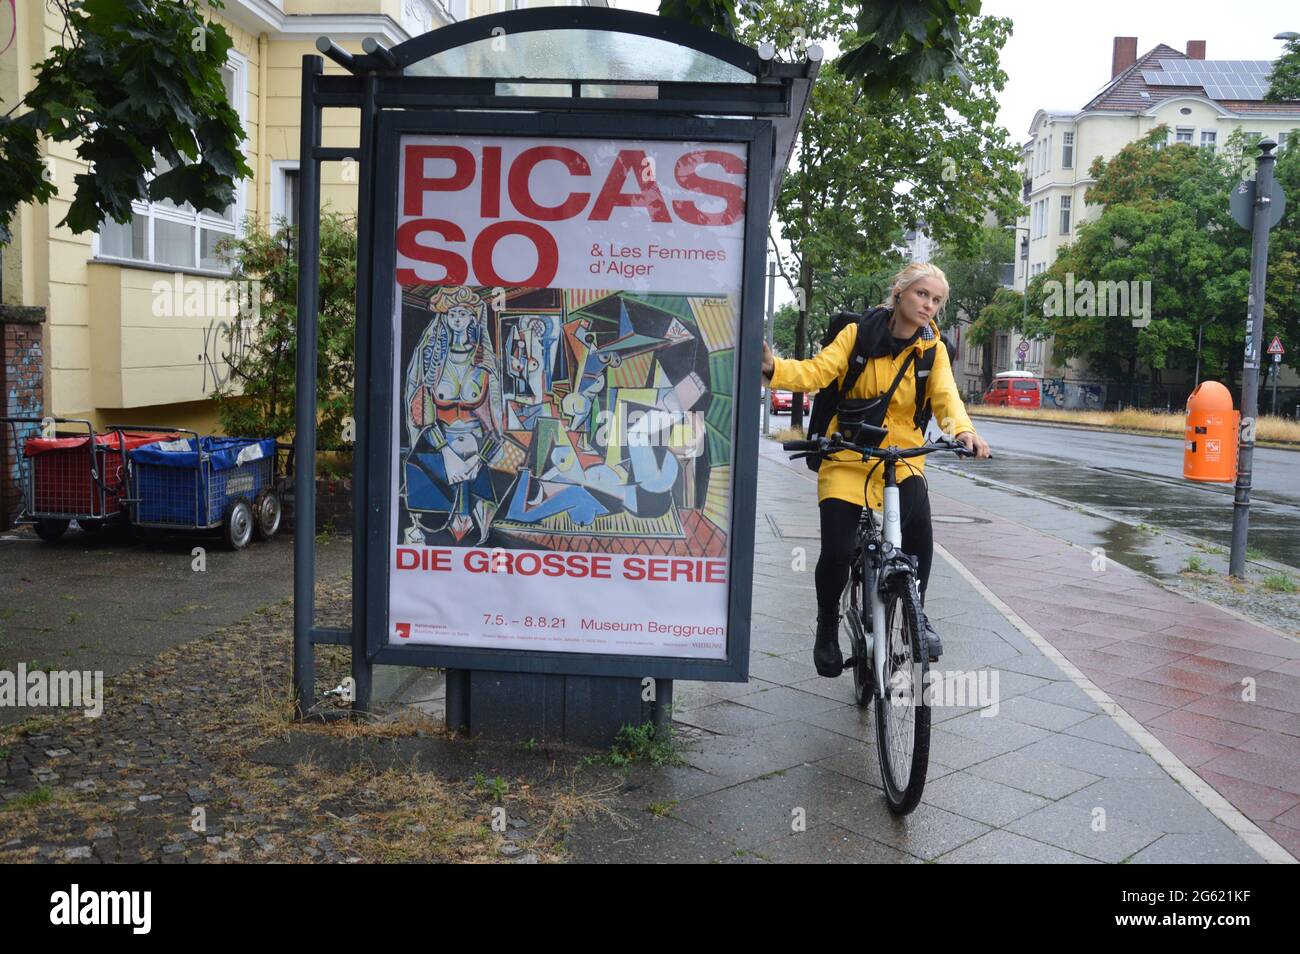 Pablo Picasso muestra publicidad en una parada de autobús y una joven con bicicleta en Saarstrasse en Berlín, Alemania - Junio 30 2021 - Museo Berggruen en Berlín muestra la exposición 'Picasso & Les Femmes d'Alger' 21.05.2021 a 29.08.2021. Foto de stock